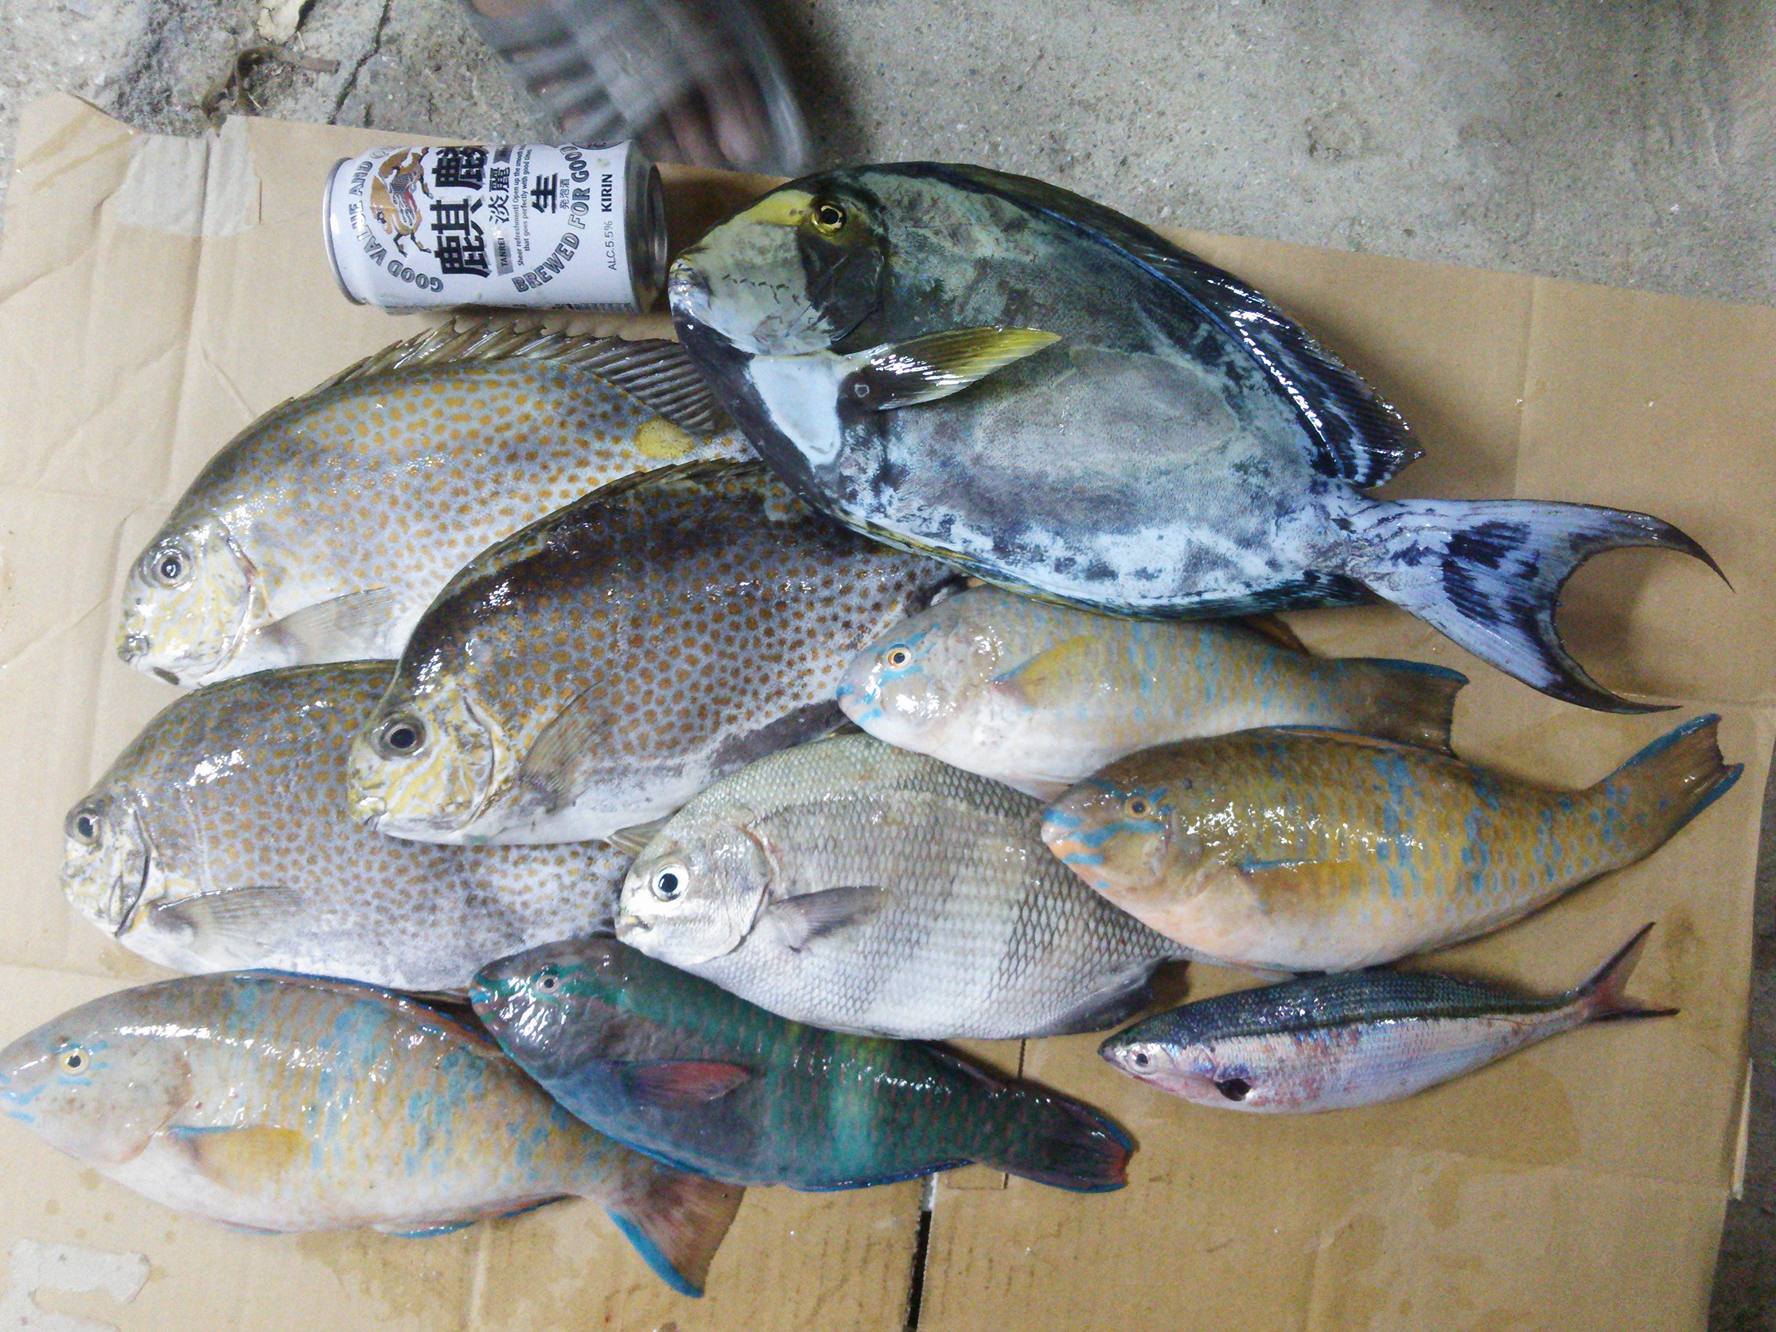 ポイント公開 沖縄のフカセ釣りで大物を釣り上げるには 本土のグレ釣りの技術はほとんど通用しない 沖縄フカセ釣り ときには釣り